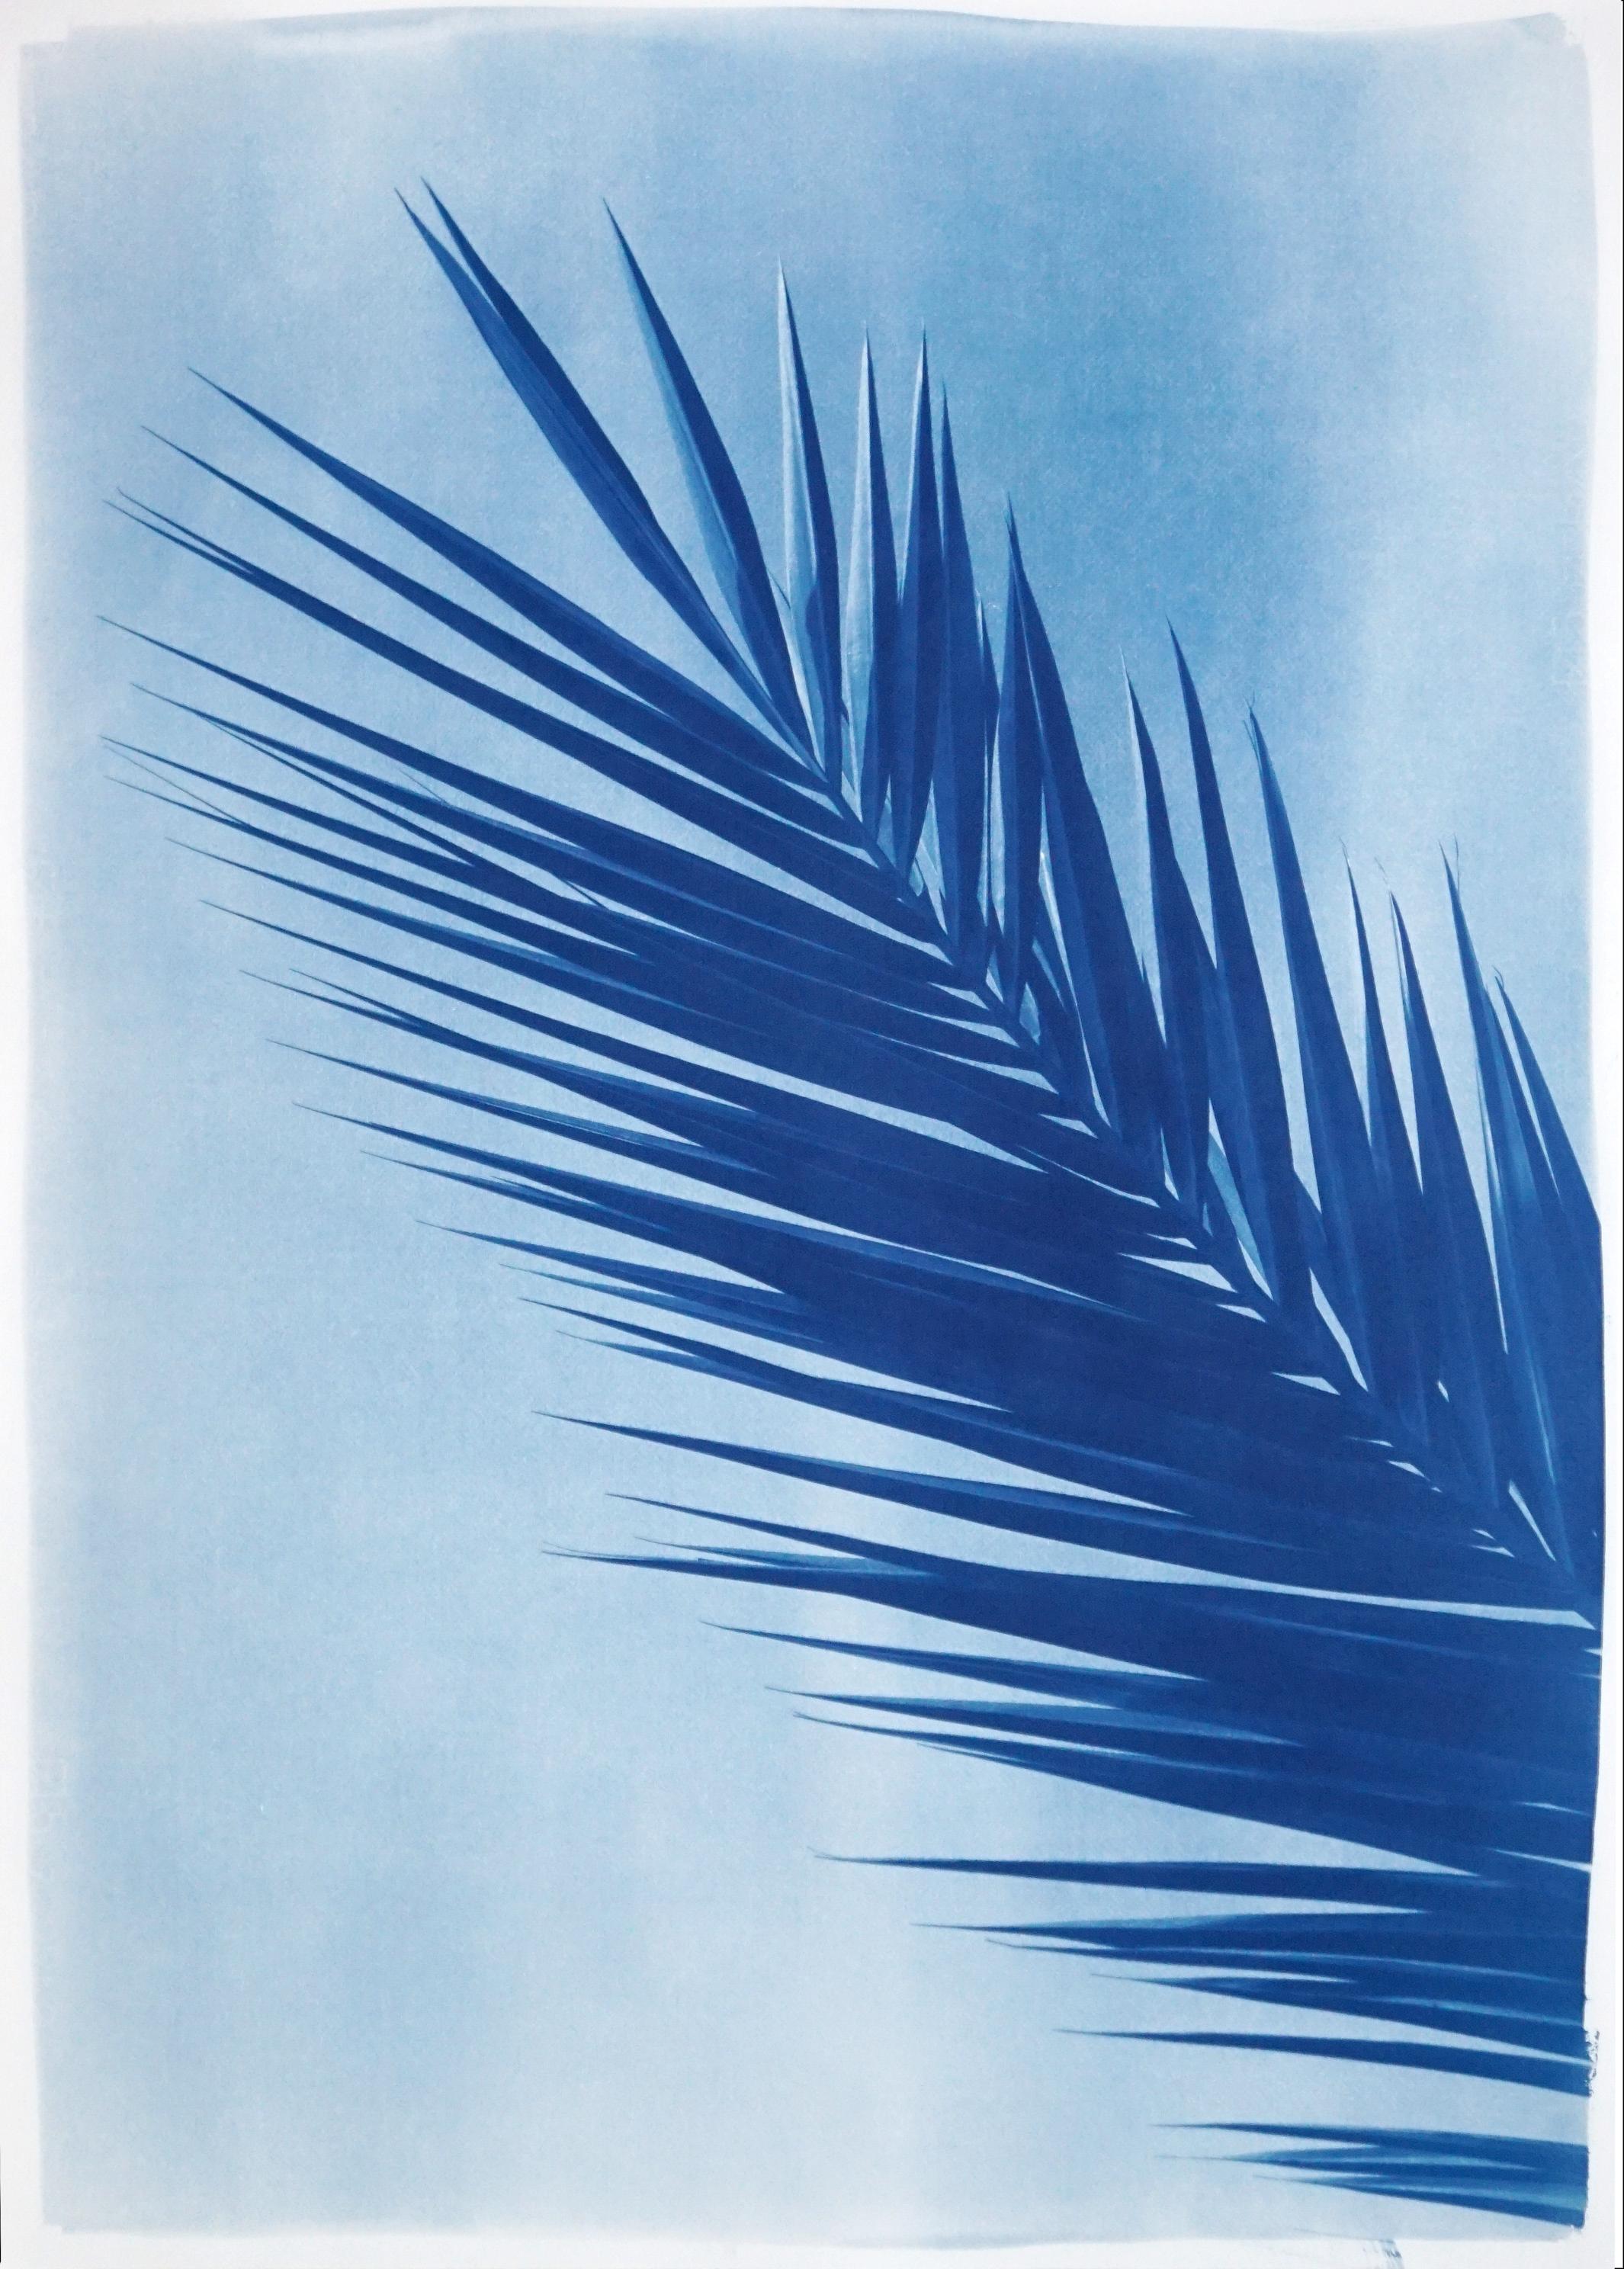 Kind of Cyan Landscape Art - Palm Leaf Over Blue Sky, Handmade Botanical Cyanotype on Paper, Tropical Vintage